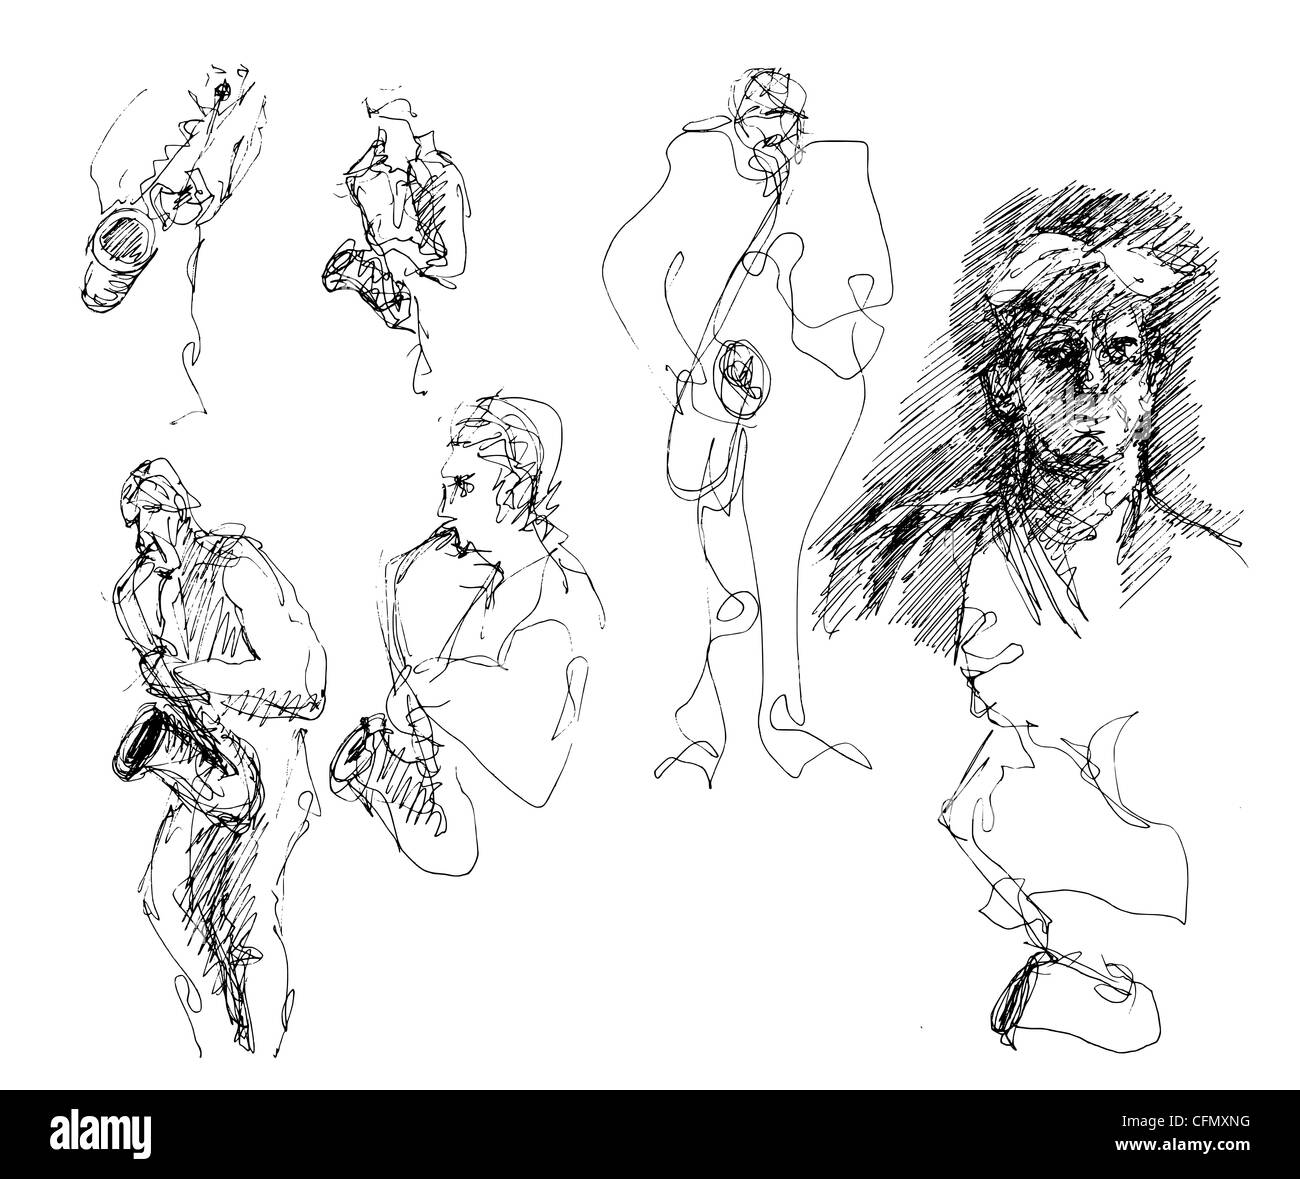 Une série de 17 croquis/gribouillis dessinés à la main informels, à utiliser comme illustrations de divers sujets. Drôle hilarante bizarre ridicule ou mortel grave. Banque D'Images